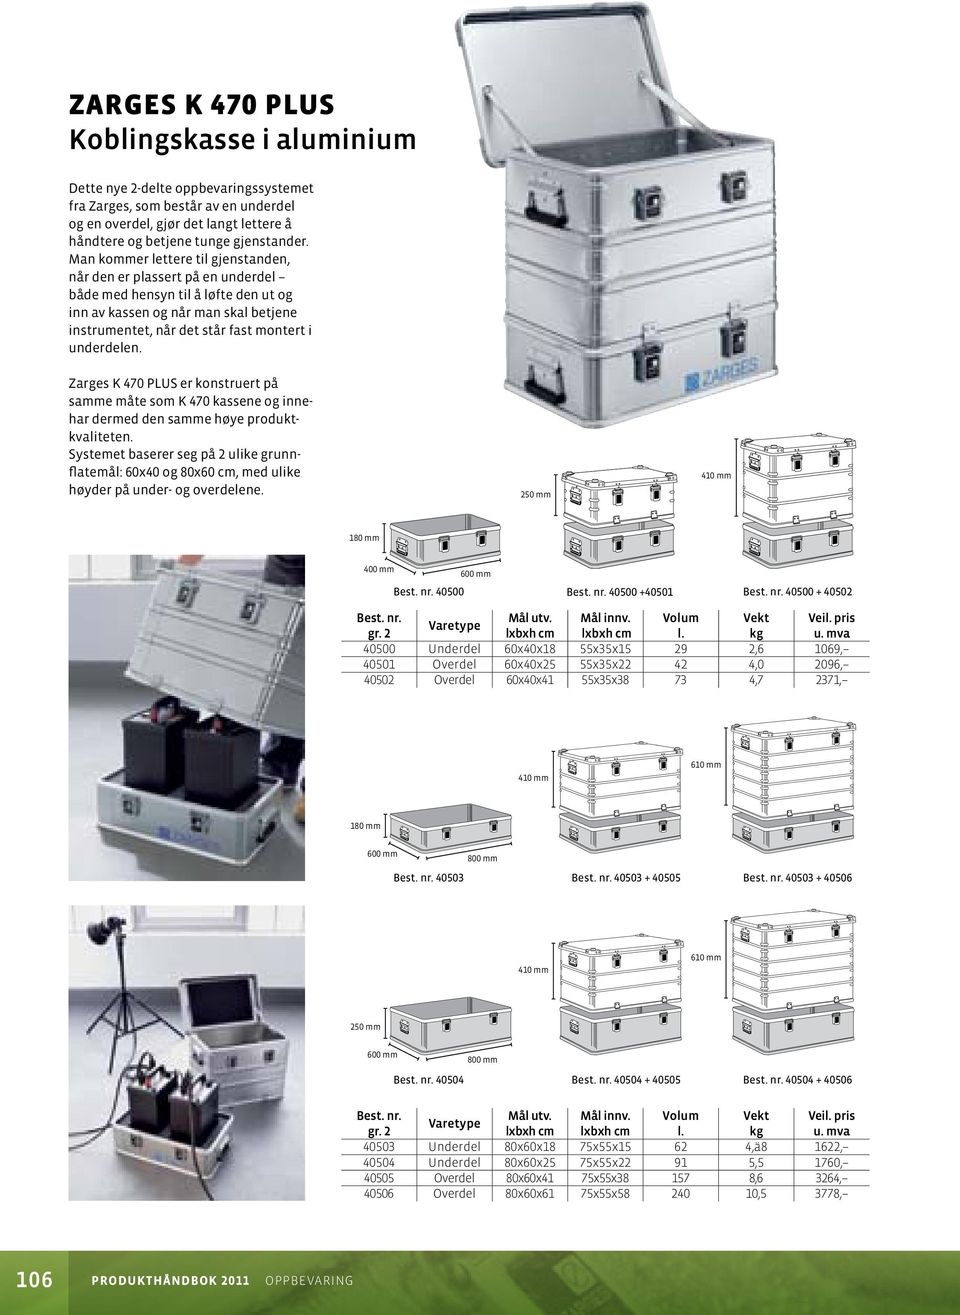 Zarges K 470 PLUS er konstruert på samme måte som K 470 kassene og innehar dermed den samme høye produktkvaliteten.